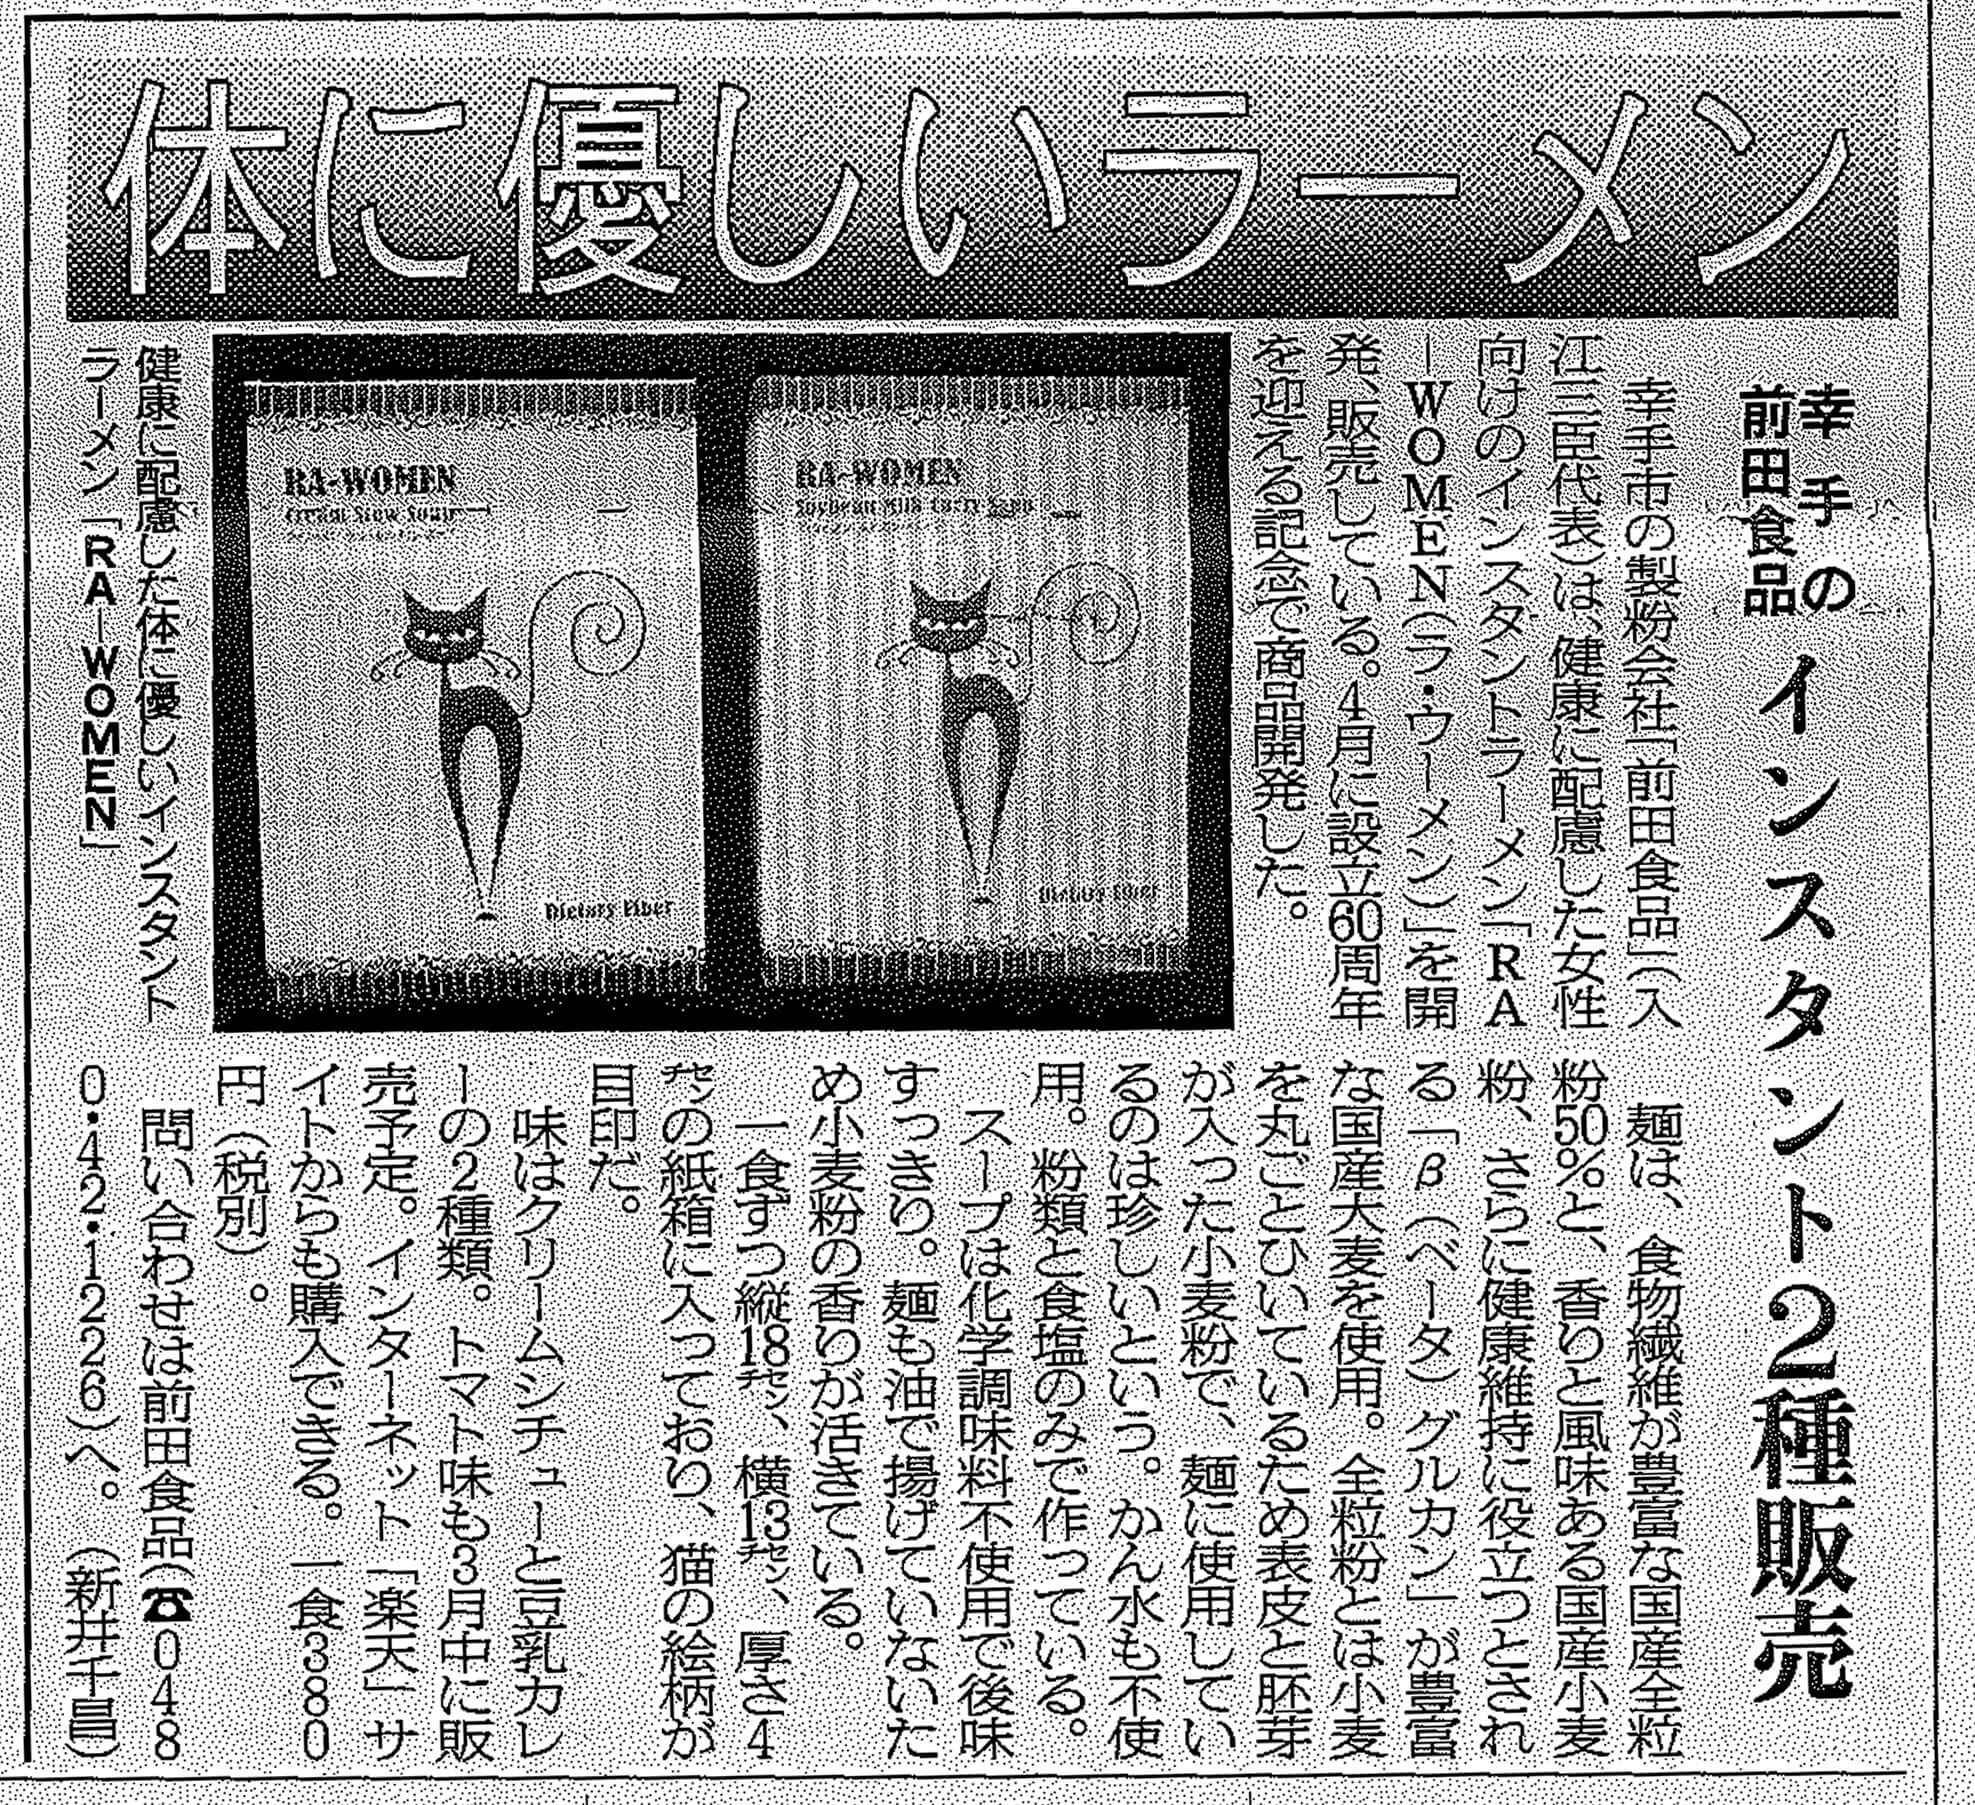 埼玉新聞にRA-WOMENが掲載されました